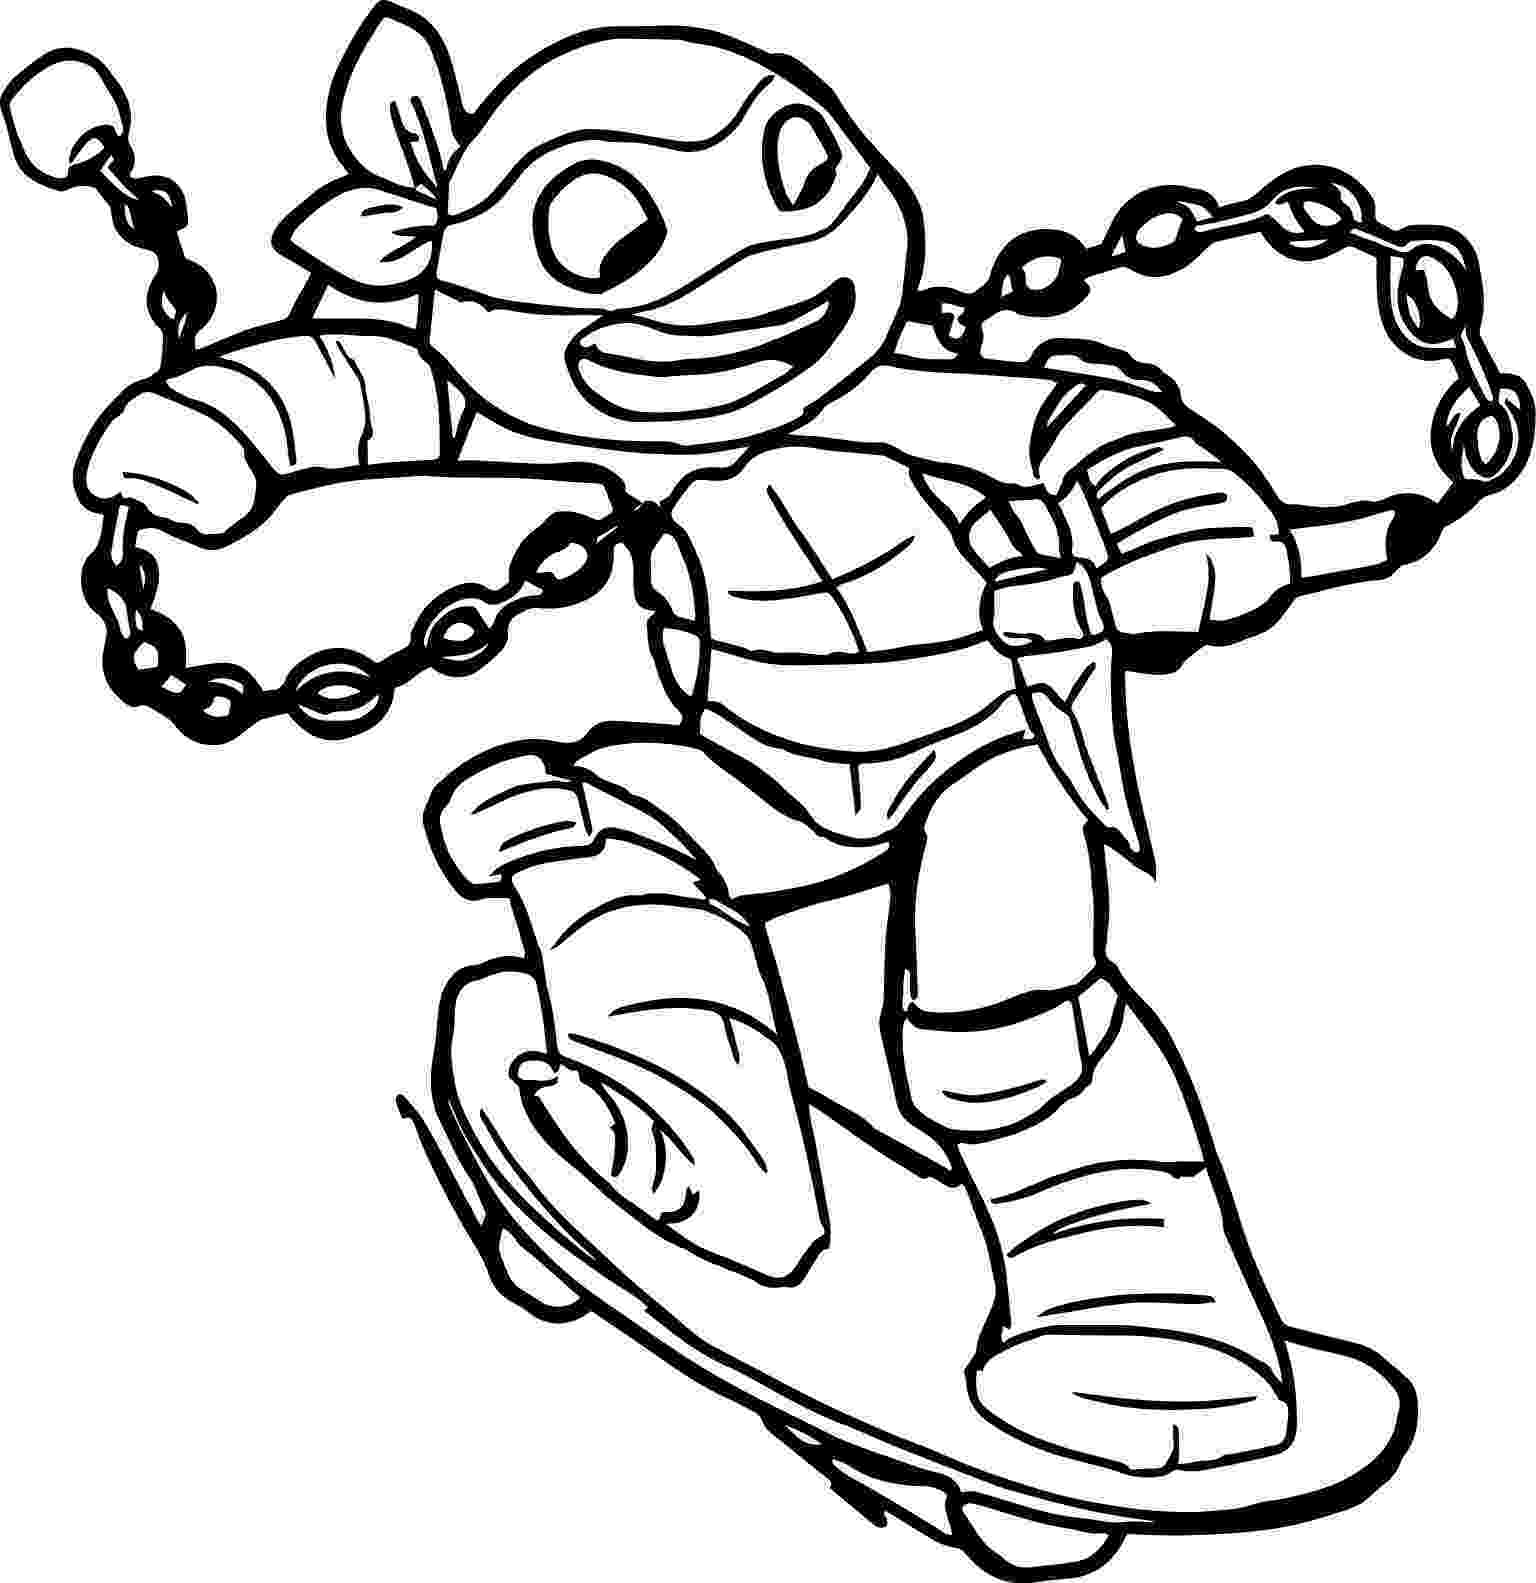 ninja turtle picture to color ninja turtles art coloring page turtle coloring pages to color picture ninja turtle 